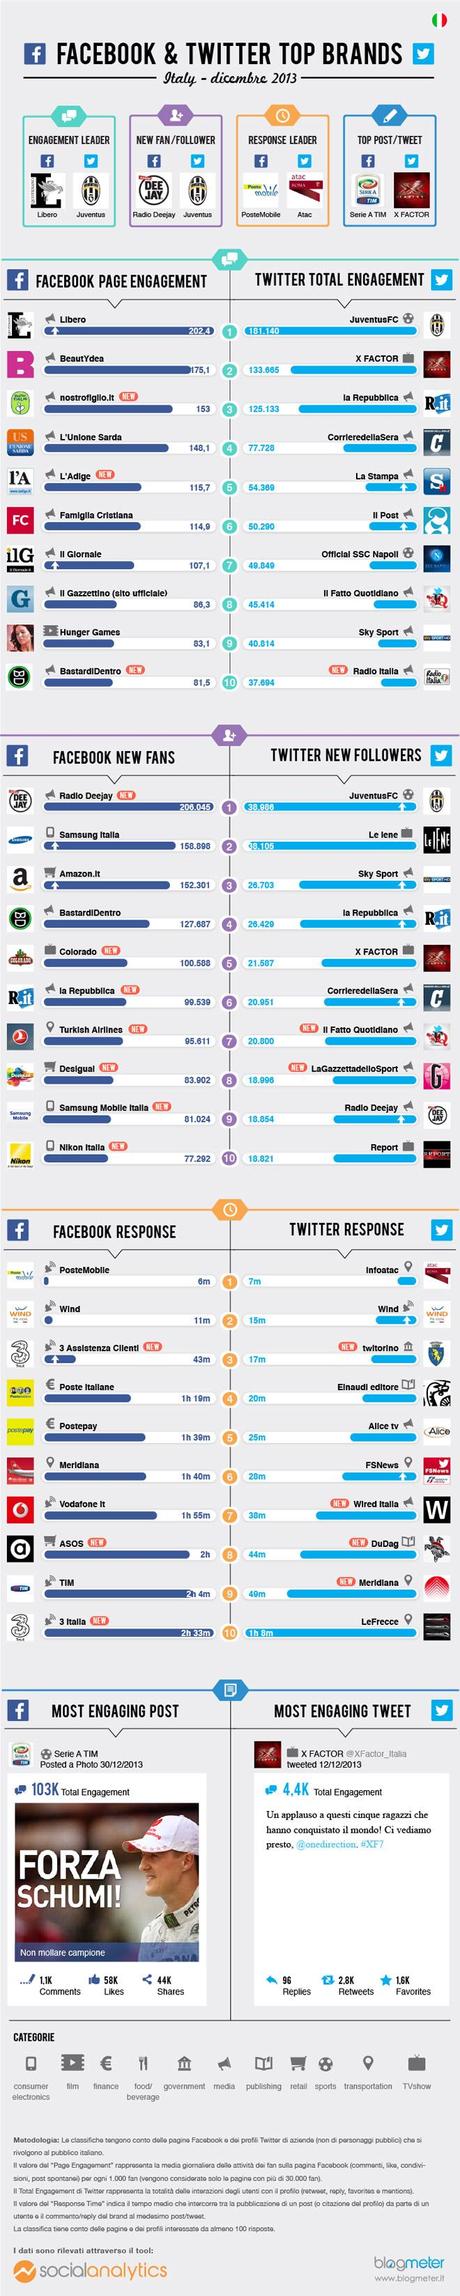 Ecco i Top Brands a Dicembre 2013 in Italia su Facebook e su Twitter